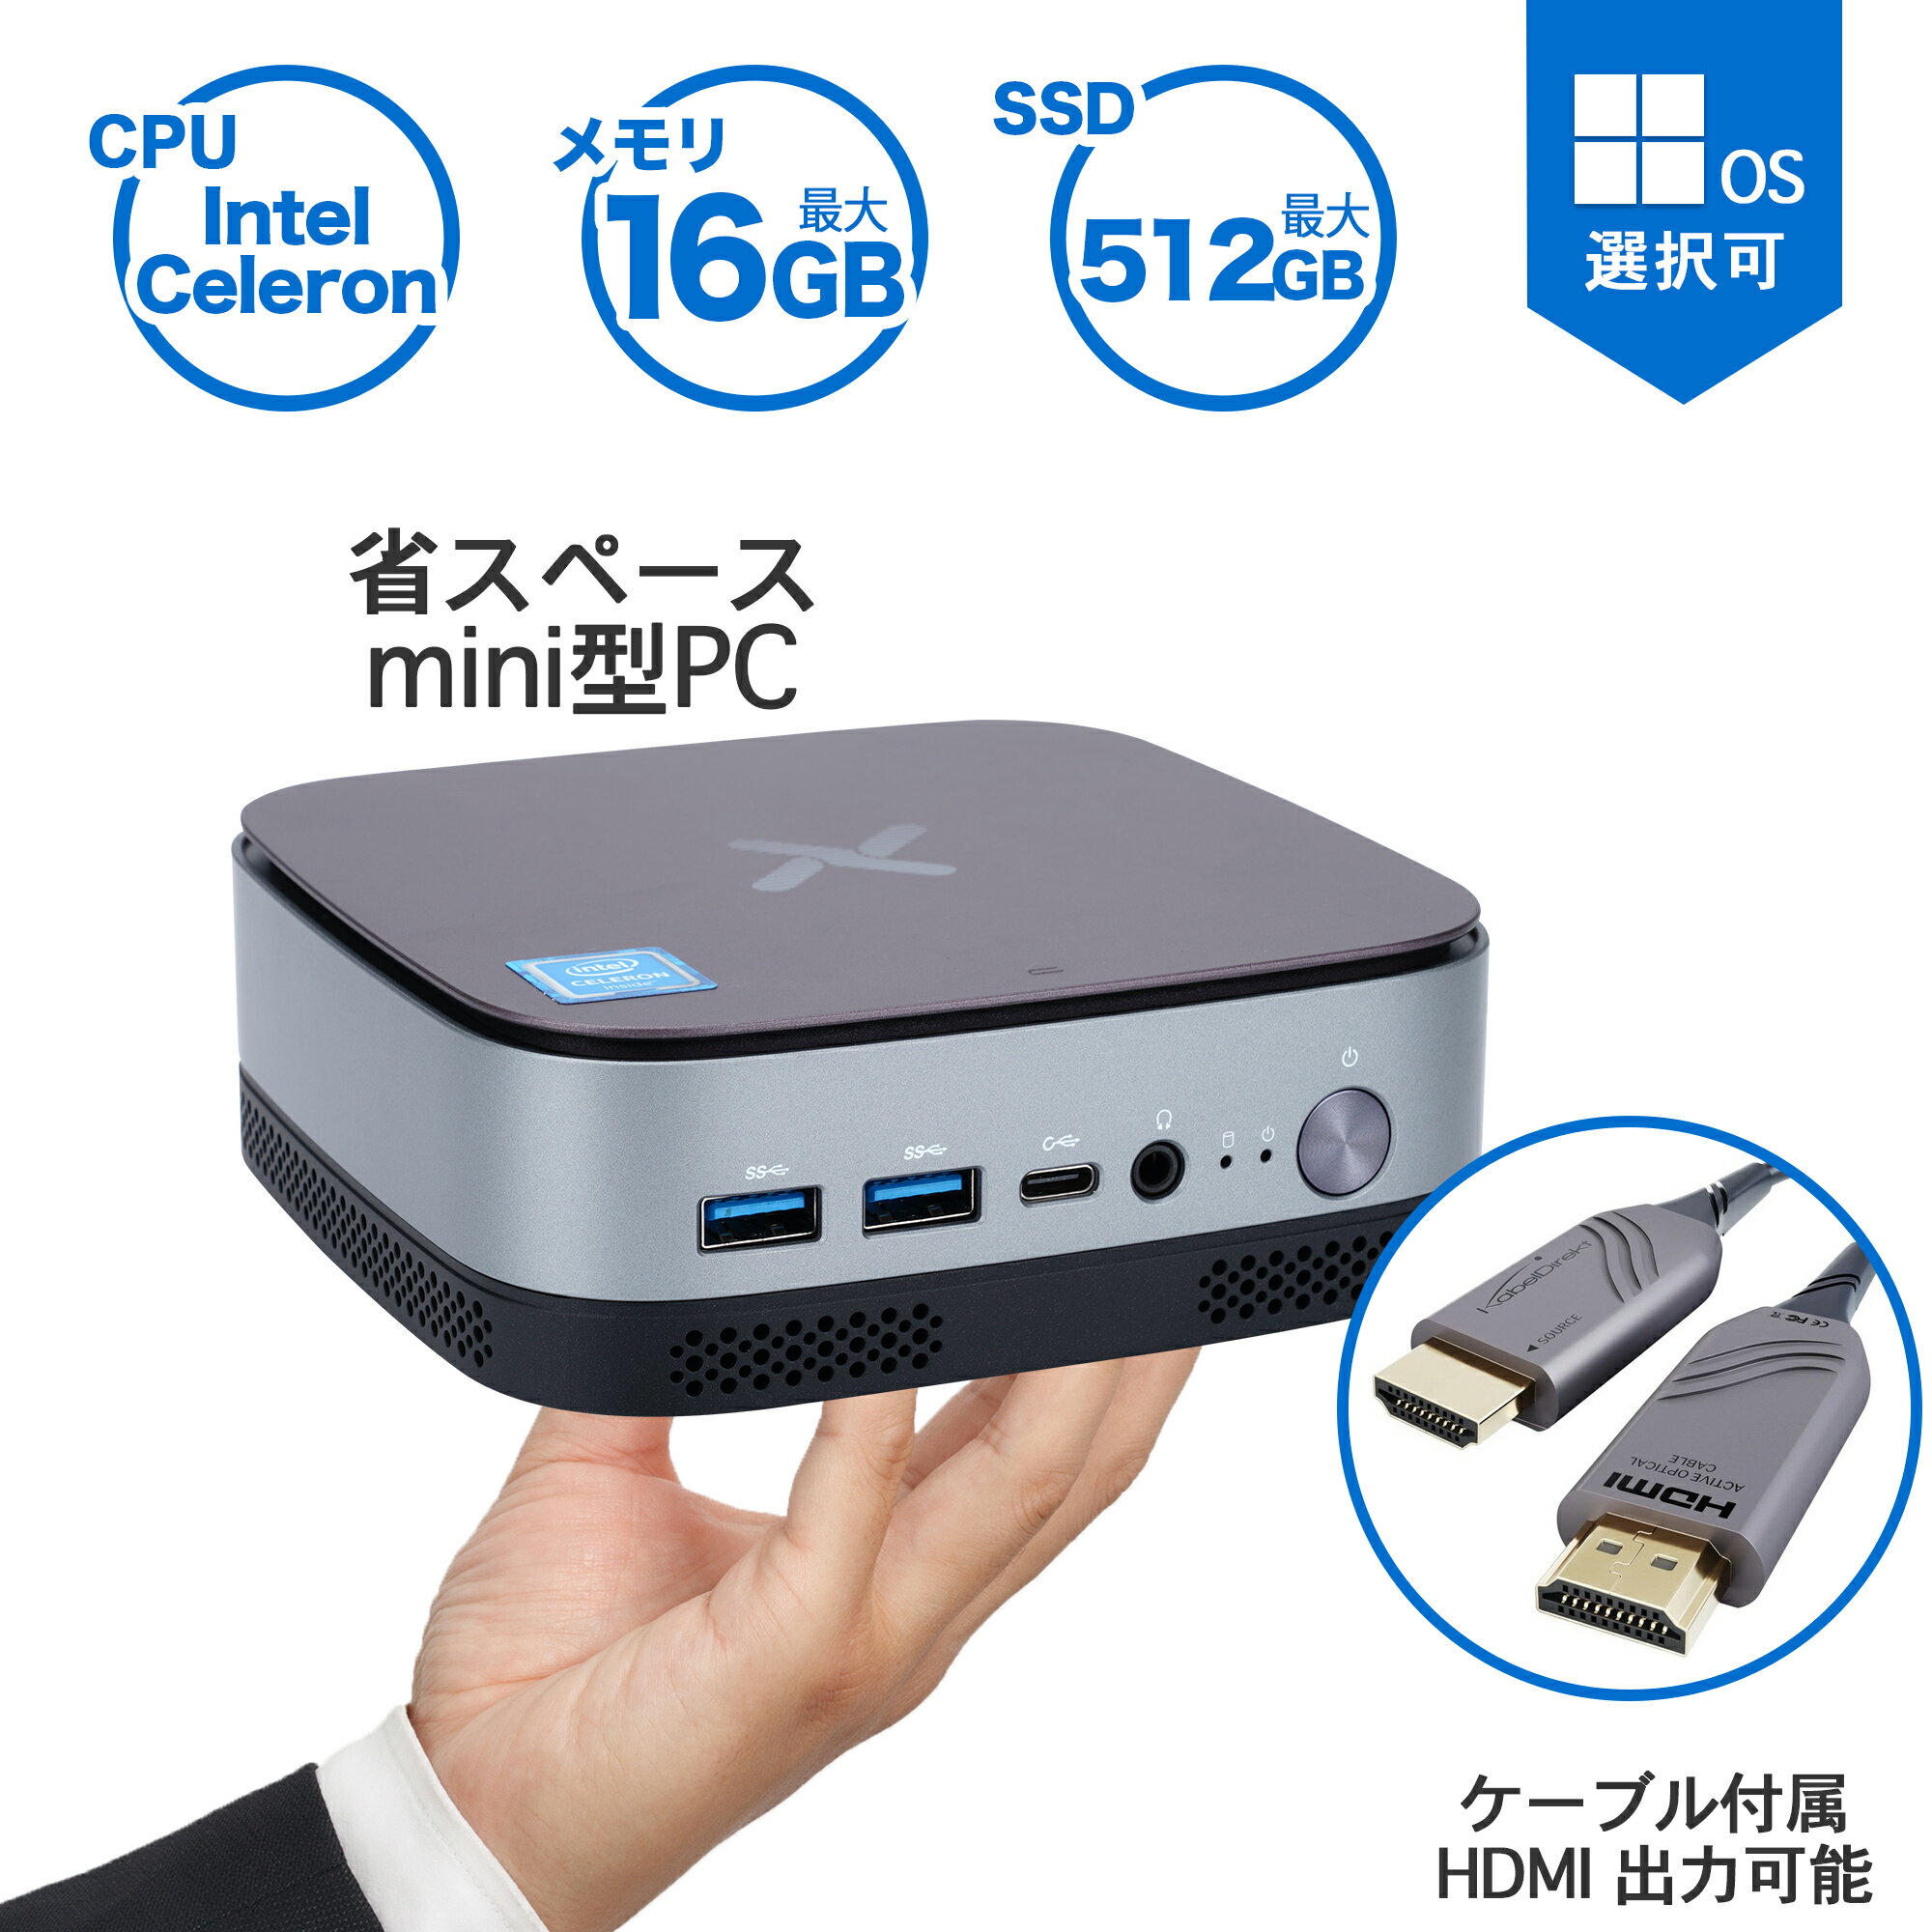 デスクトップパソコン 手のひらサイズ ミニPC minPC Windows11搭載 インテル Celeron MINI-D7pro全機能USB 3.0 Type-C多画面出力可能 HDMI フル4K出力 無線機能 軽い 小型PC 省エネ VESA付き 超省スペース 外出用 静音